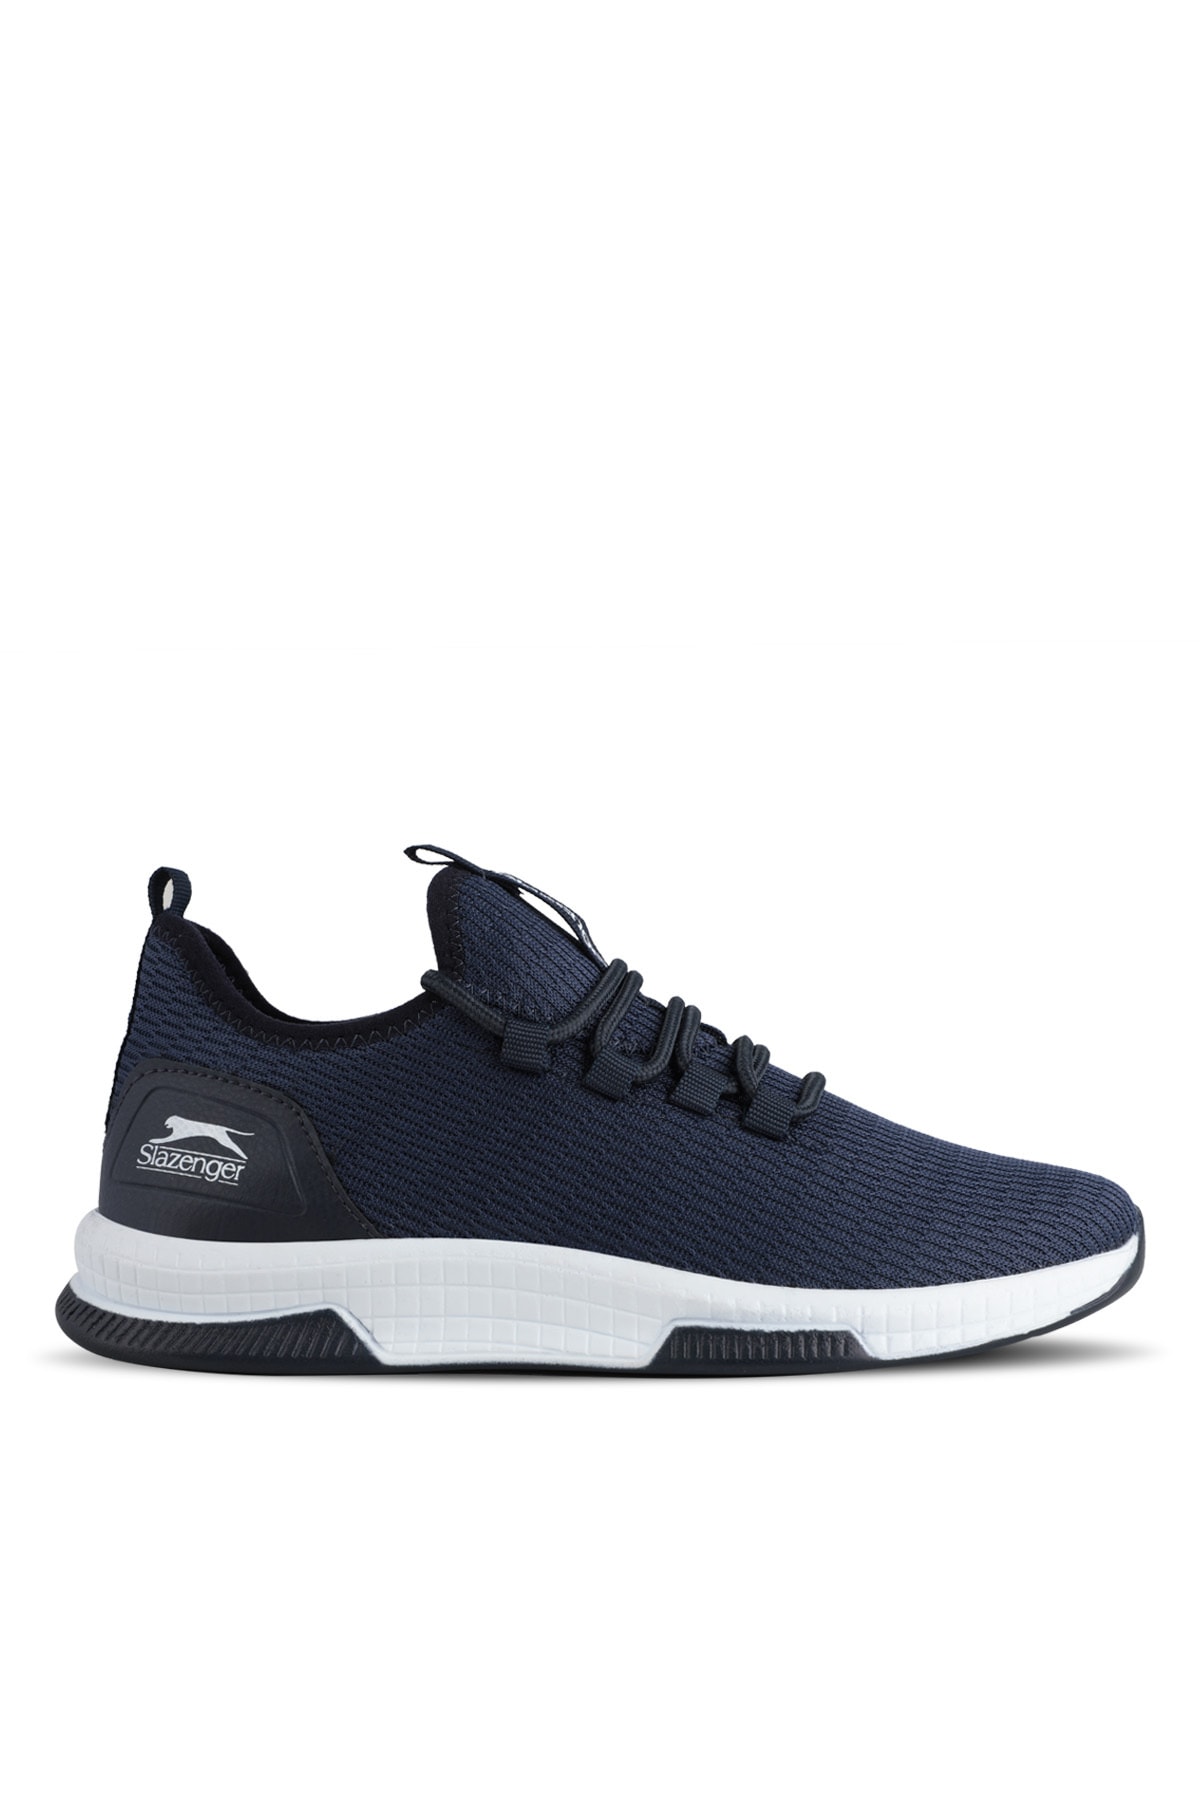 Slazenger Agenda Sneaker Men's Shoes Navy / White